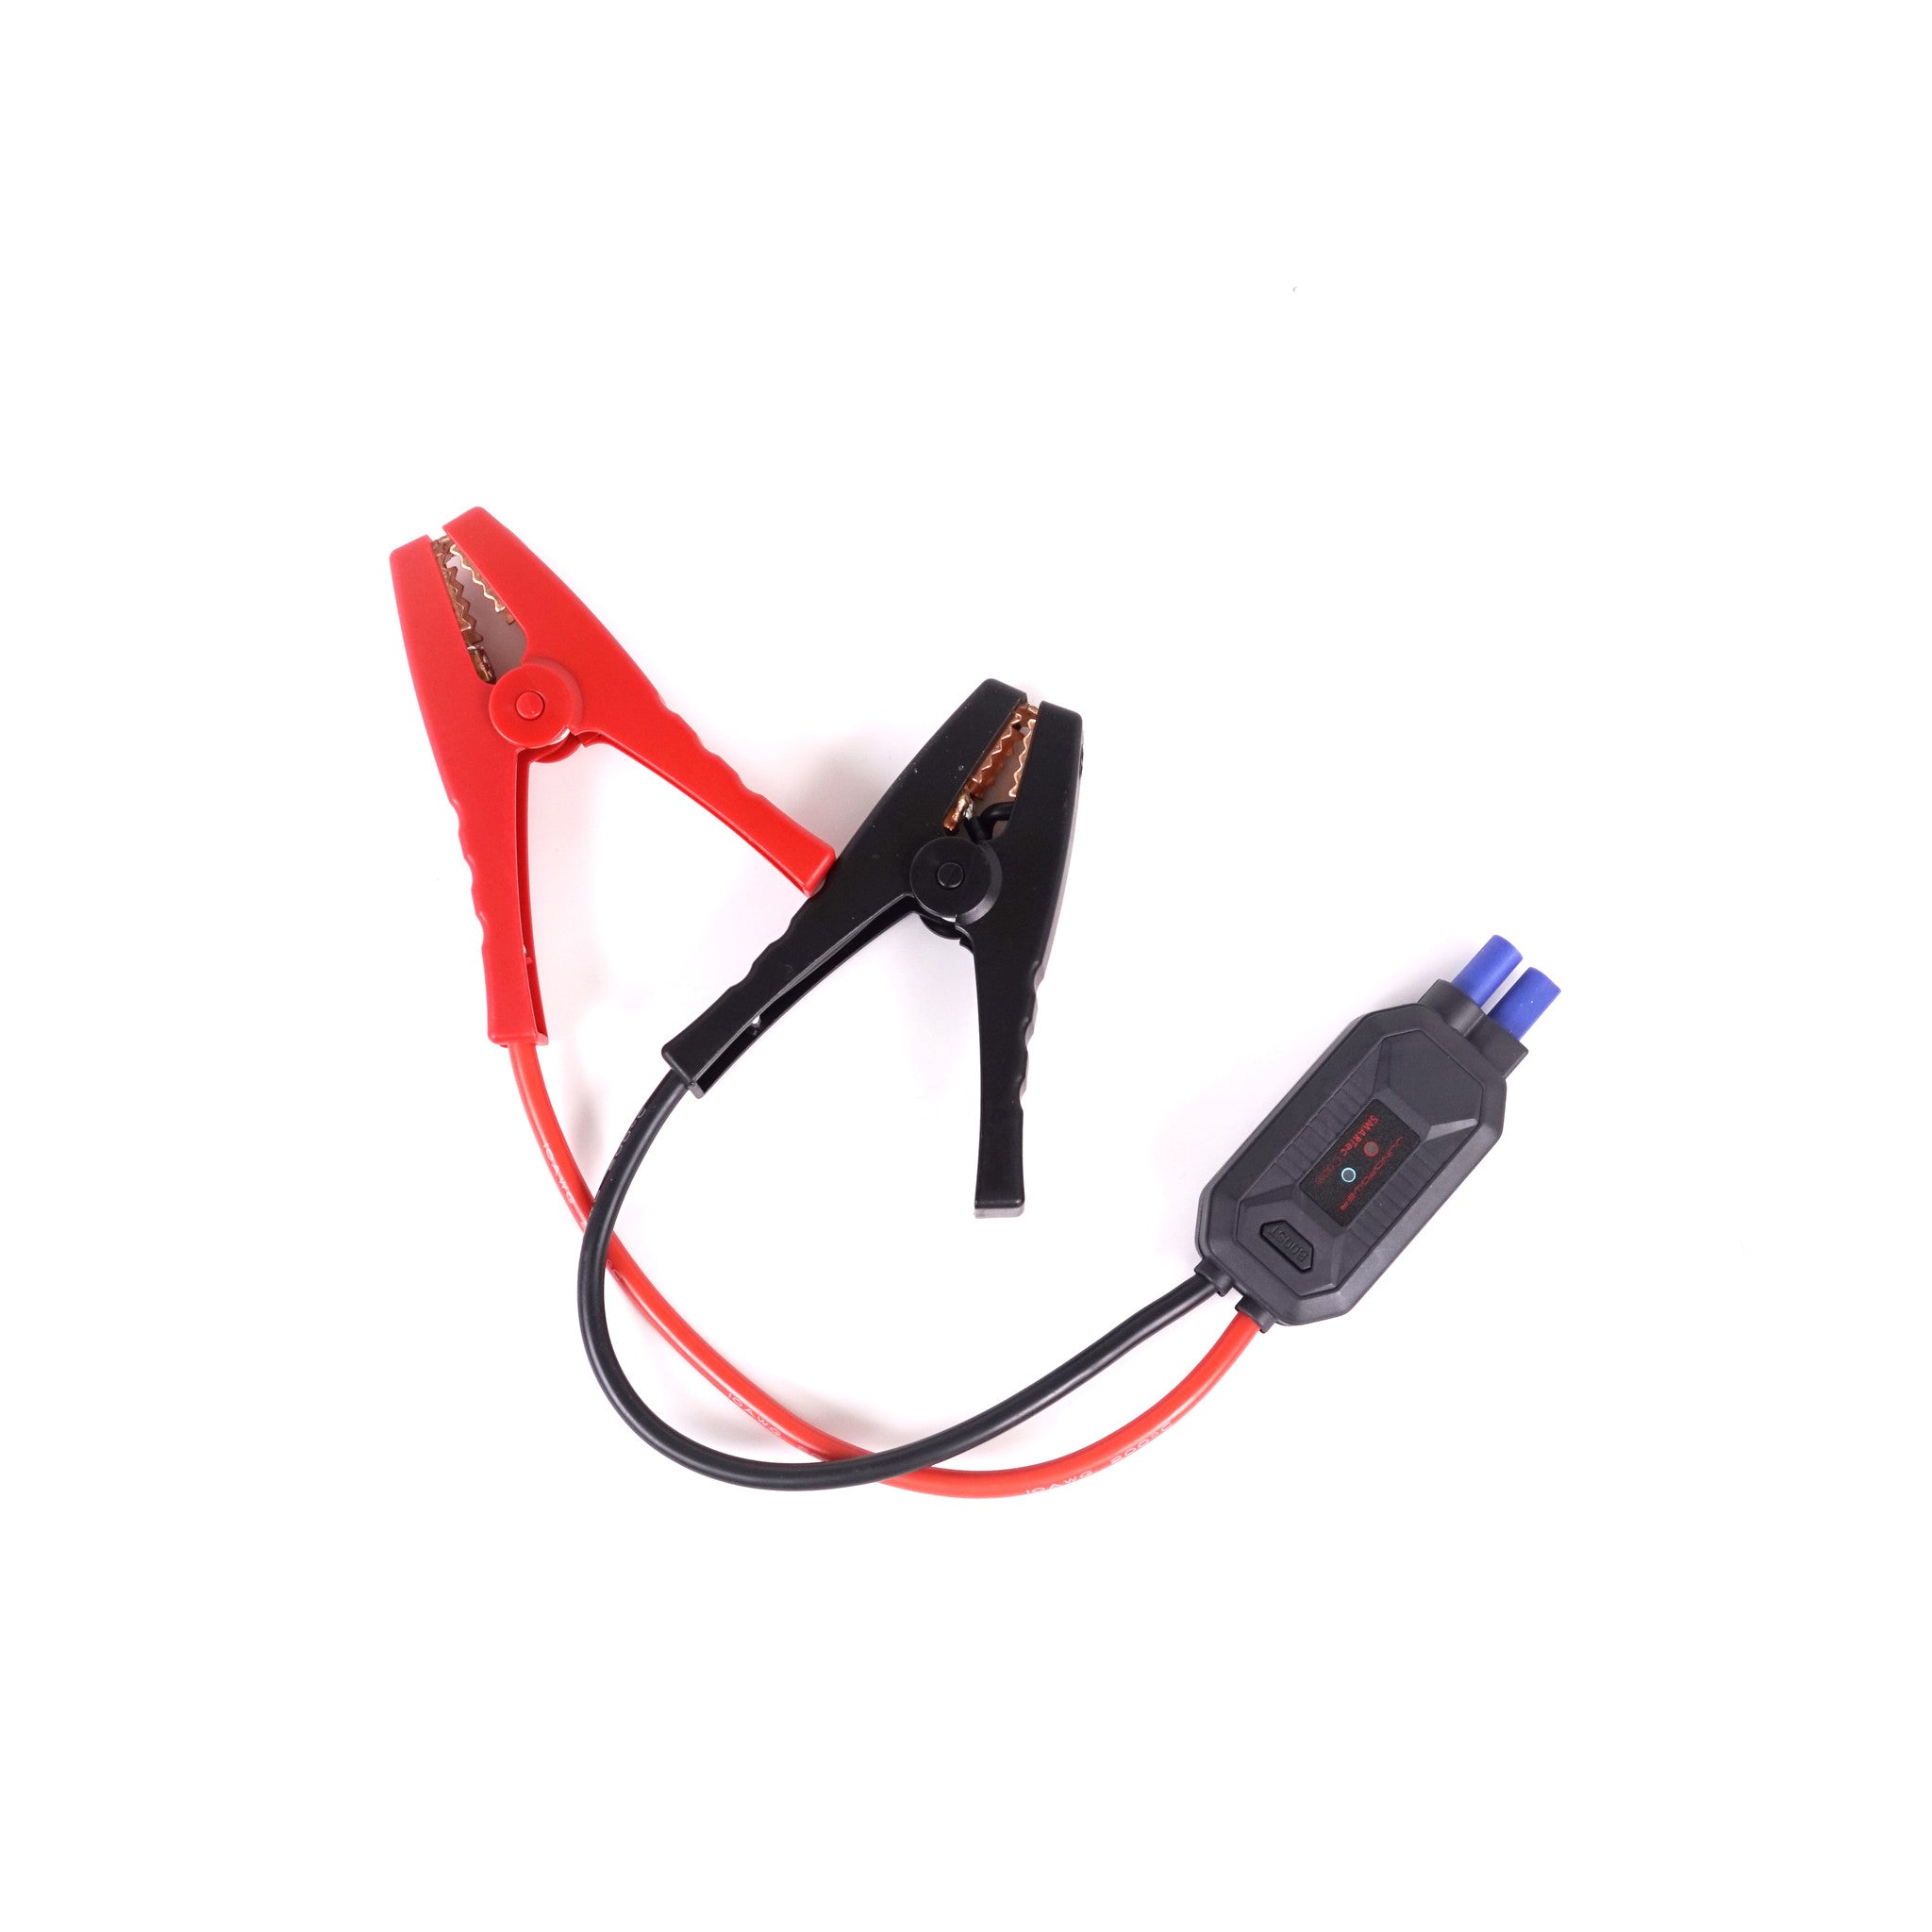 Shop Additional Smart Jumper Cables for Junojumper Series 2 - Juno Power